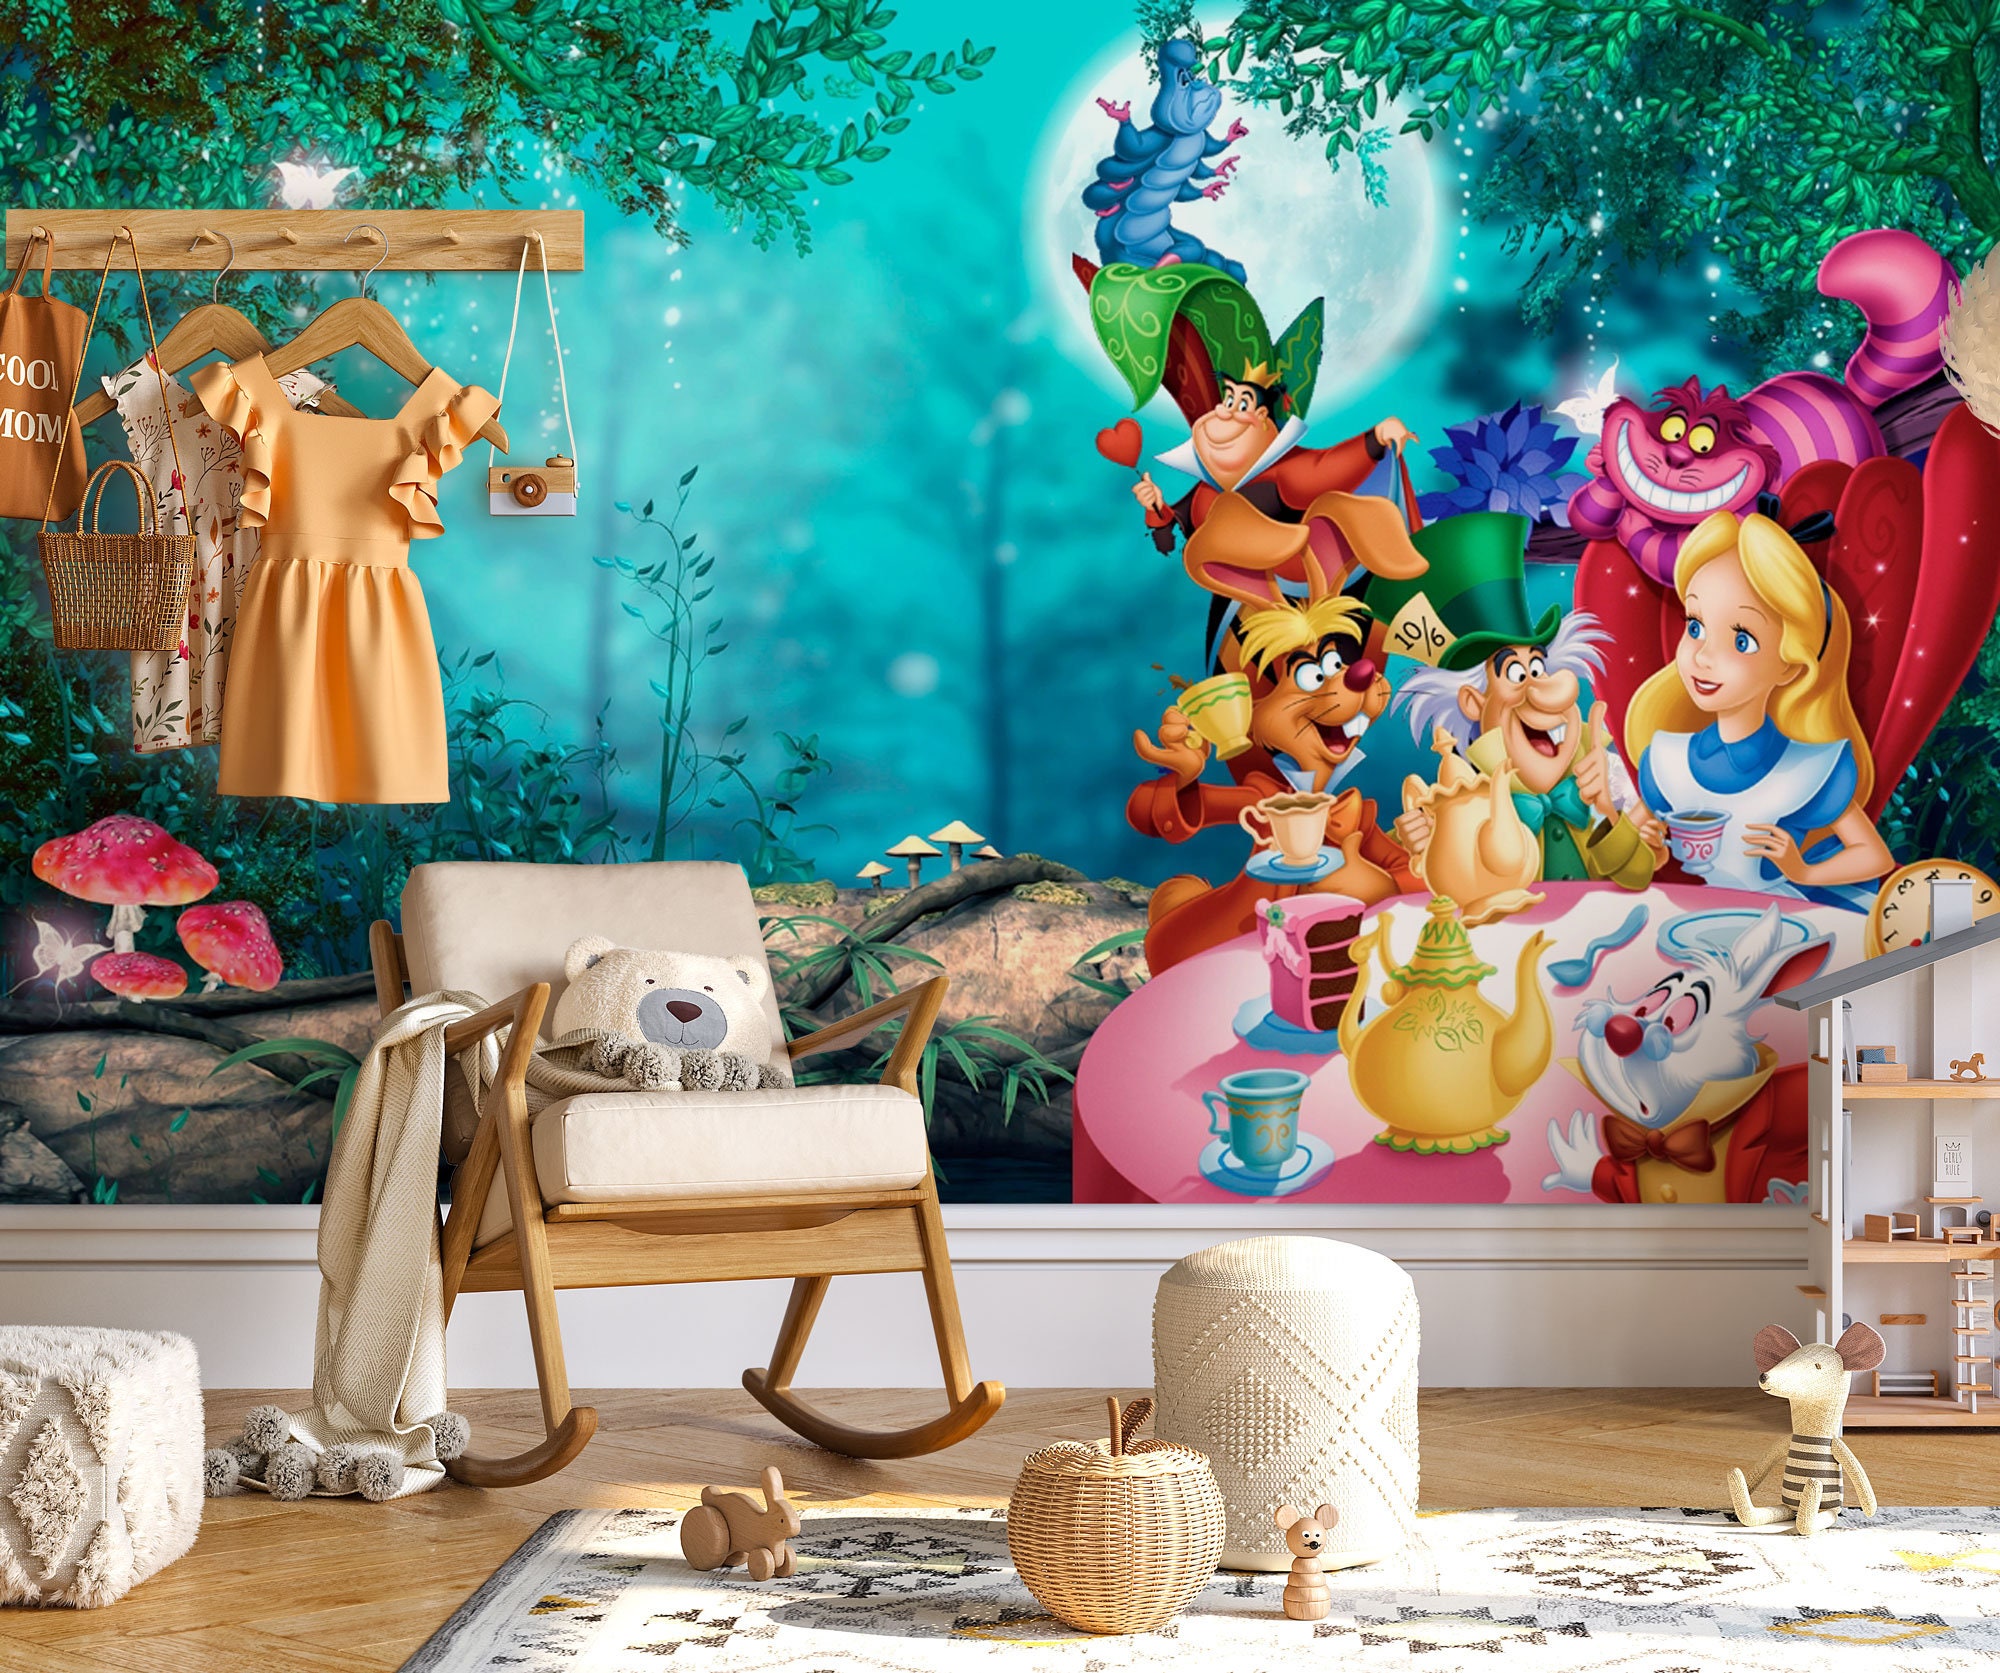 Disney Alice in Wonderland, Wall Art Decor, Print Size 8.5 x 11, unframed,  Room, Nursery, Studio, Office, kids gifts